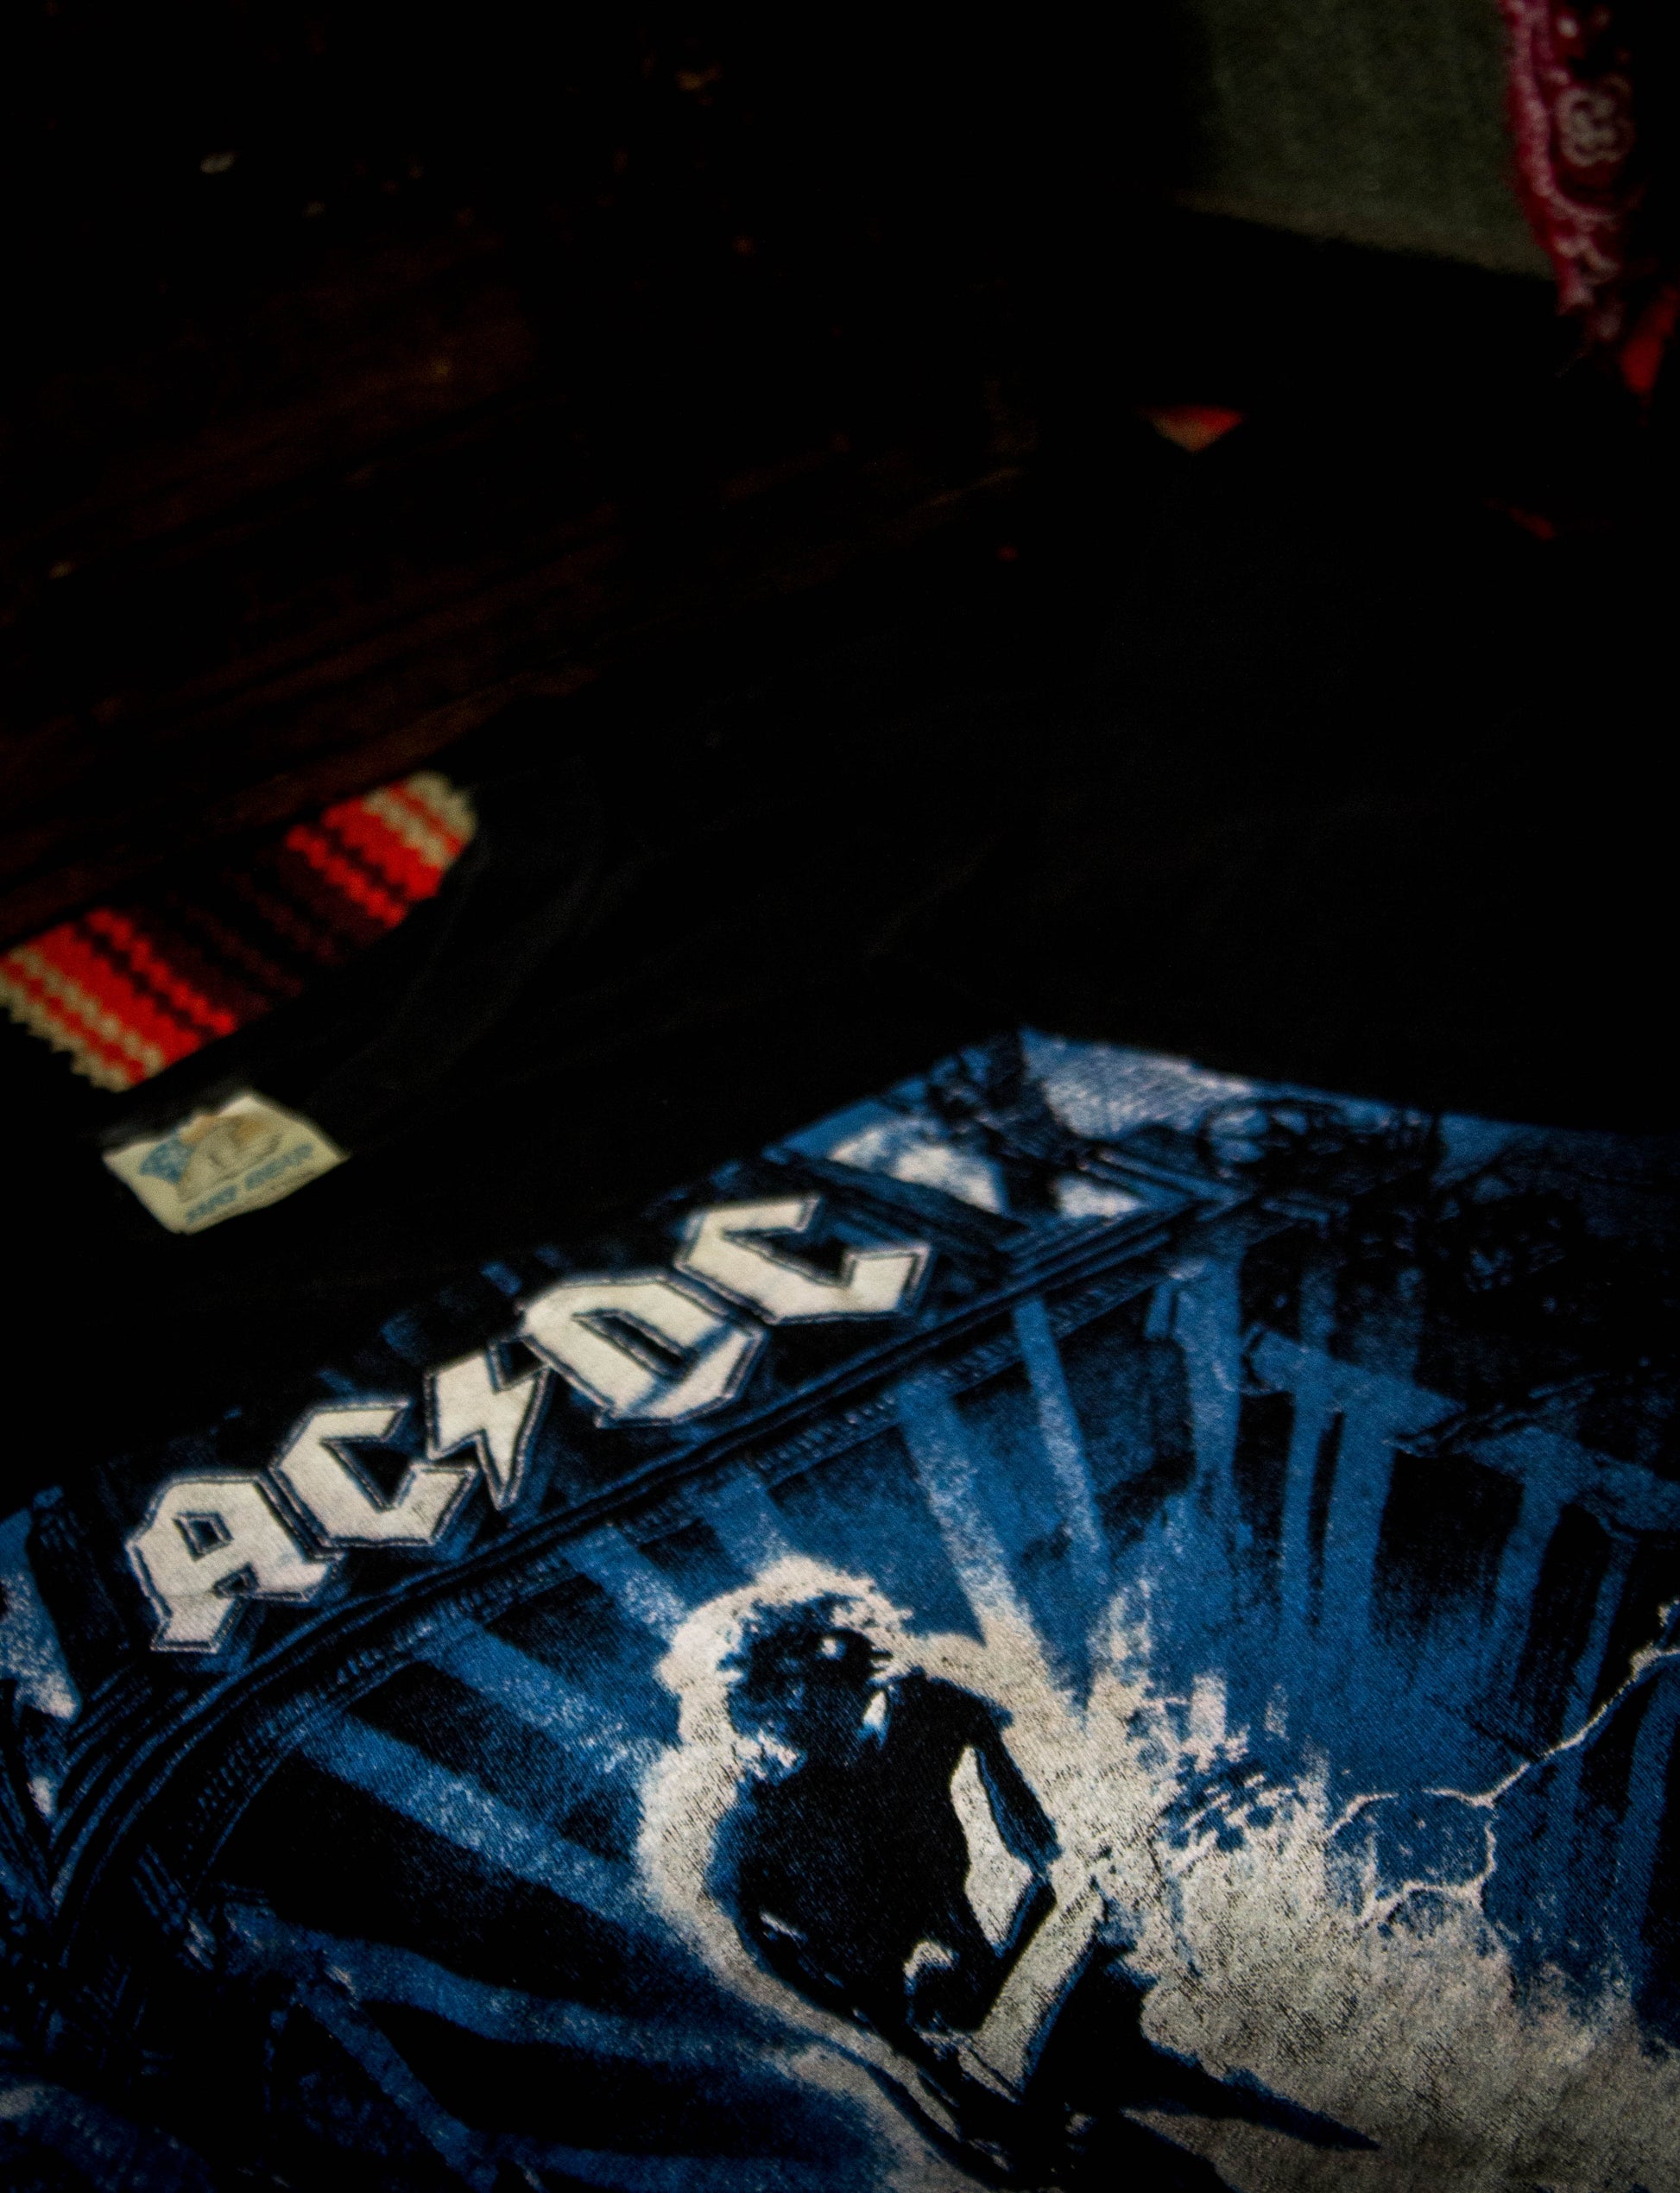 Vintage AC/DC 1996 Ballbreaker Hard As A Rock Tour Concert T Shirt XL